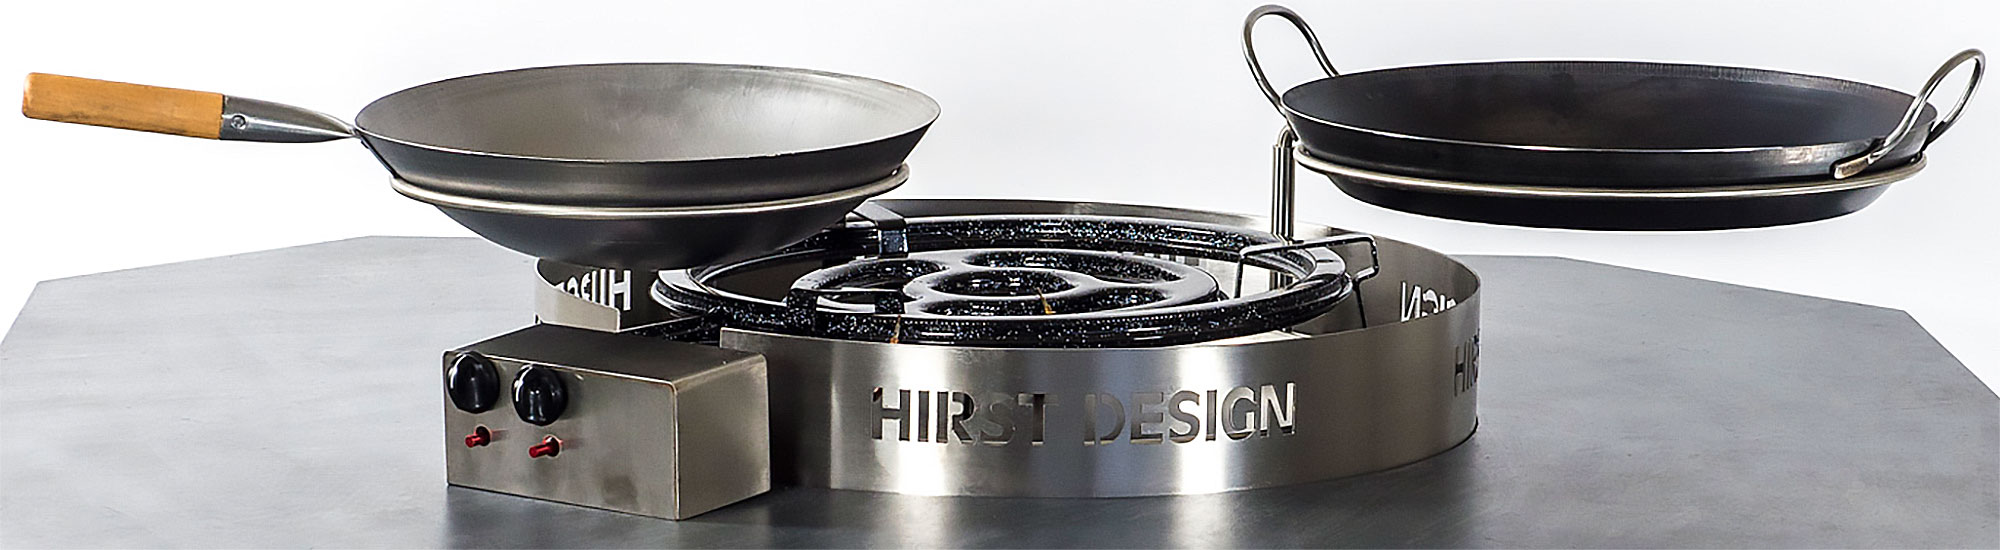 Hirst Design Premium Grill Shop